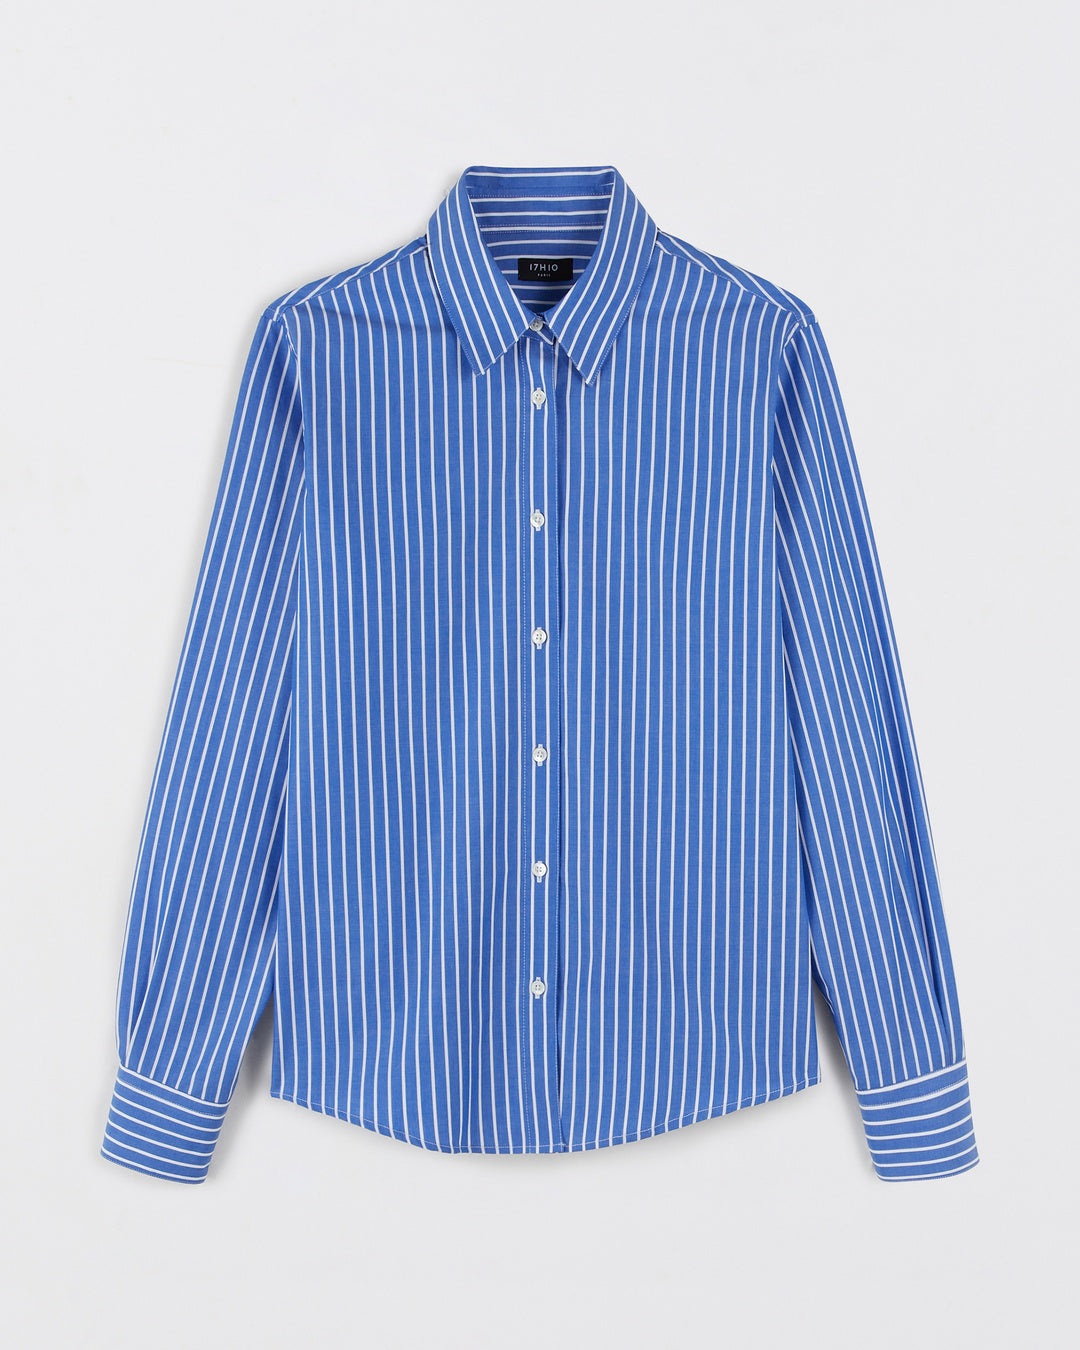 Hudson shirt - Bleu Azur striped